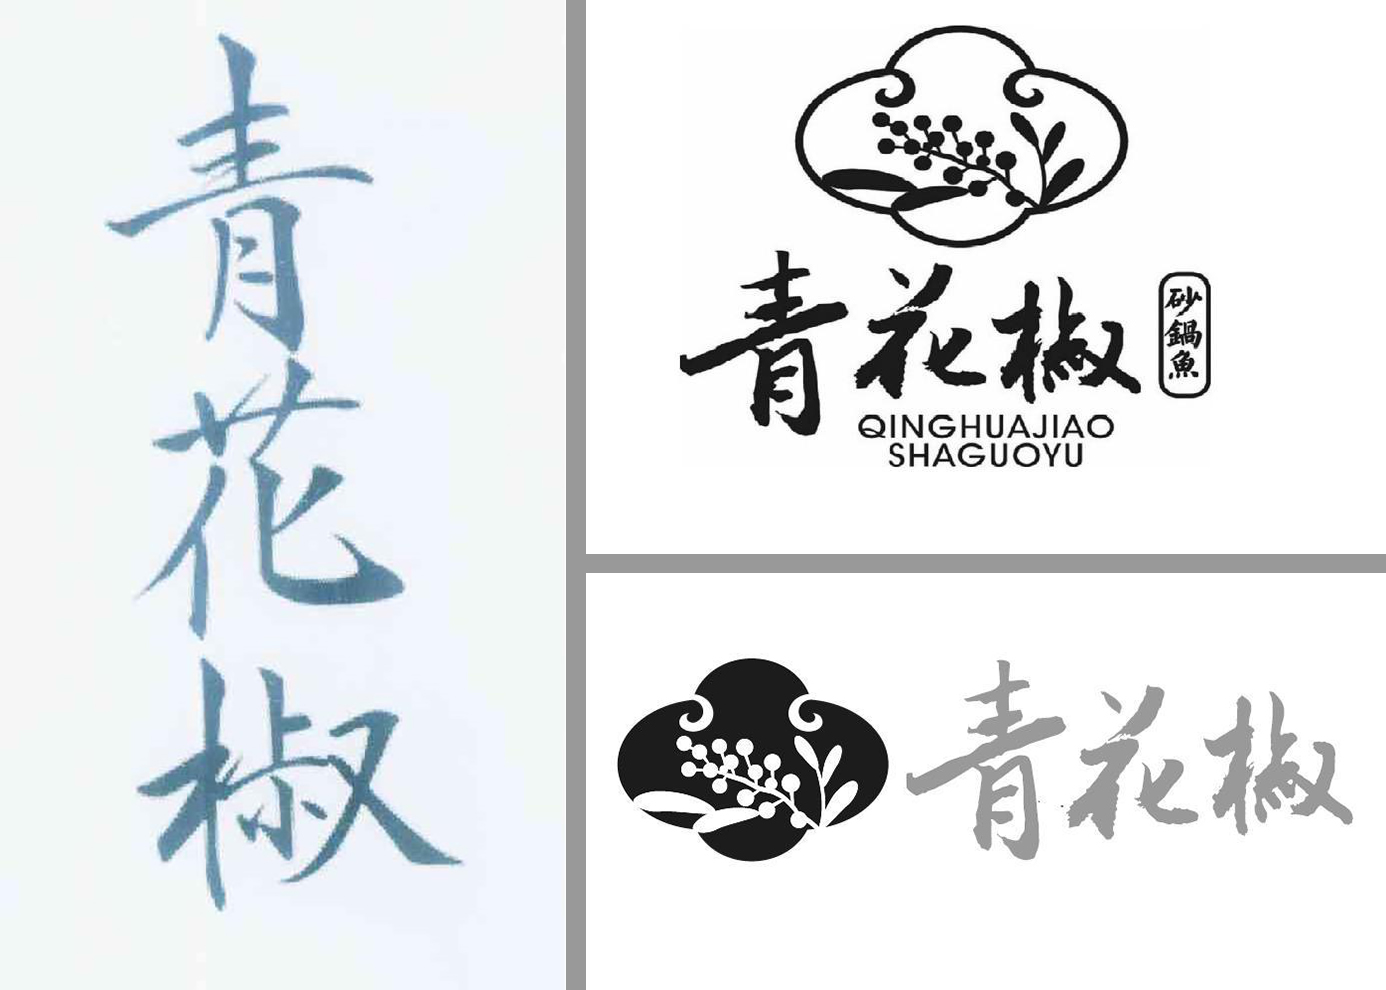 这是一张拼版图片 三张图片均是上海万翠堂公司注册的“青花椒”商标